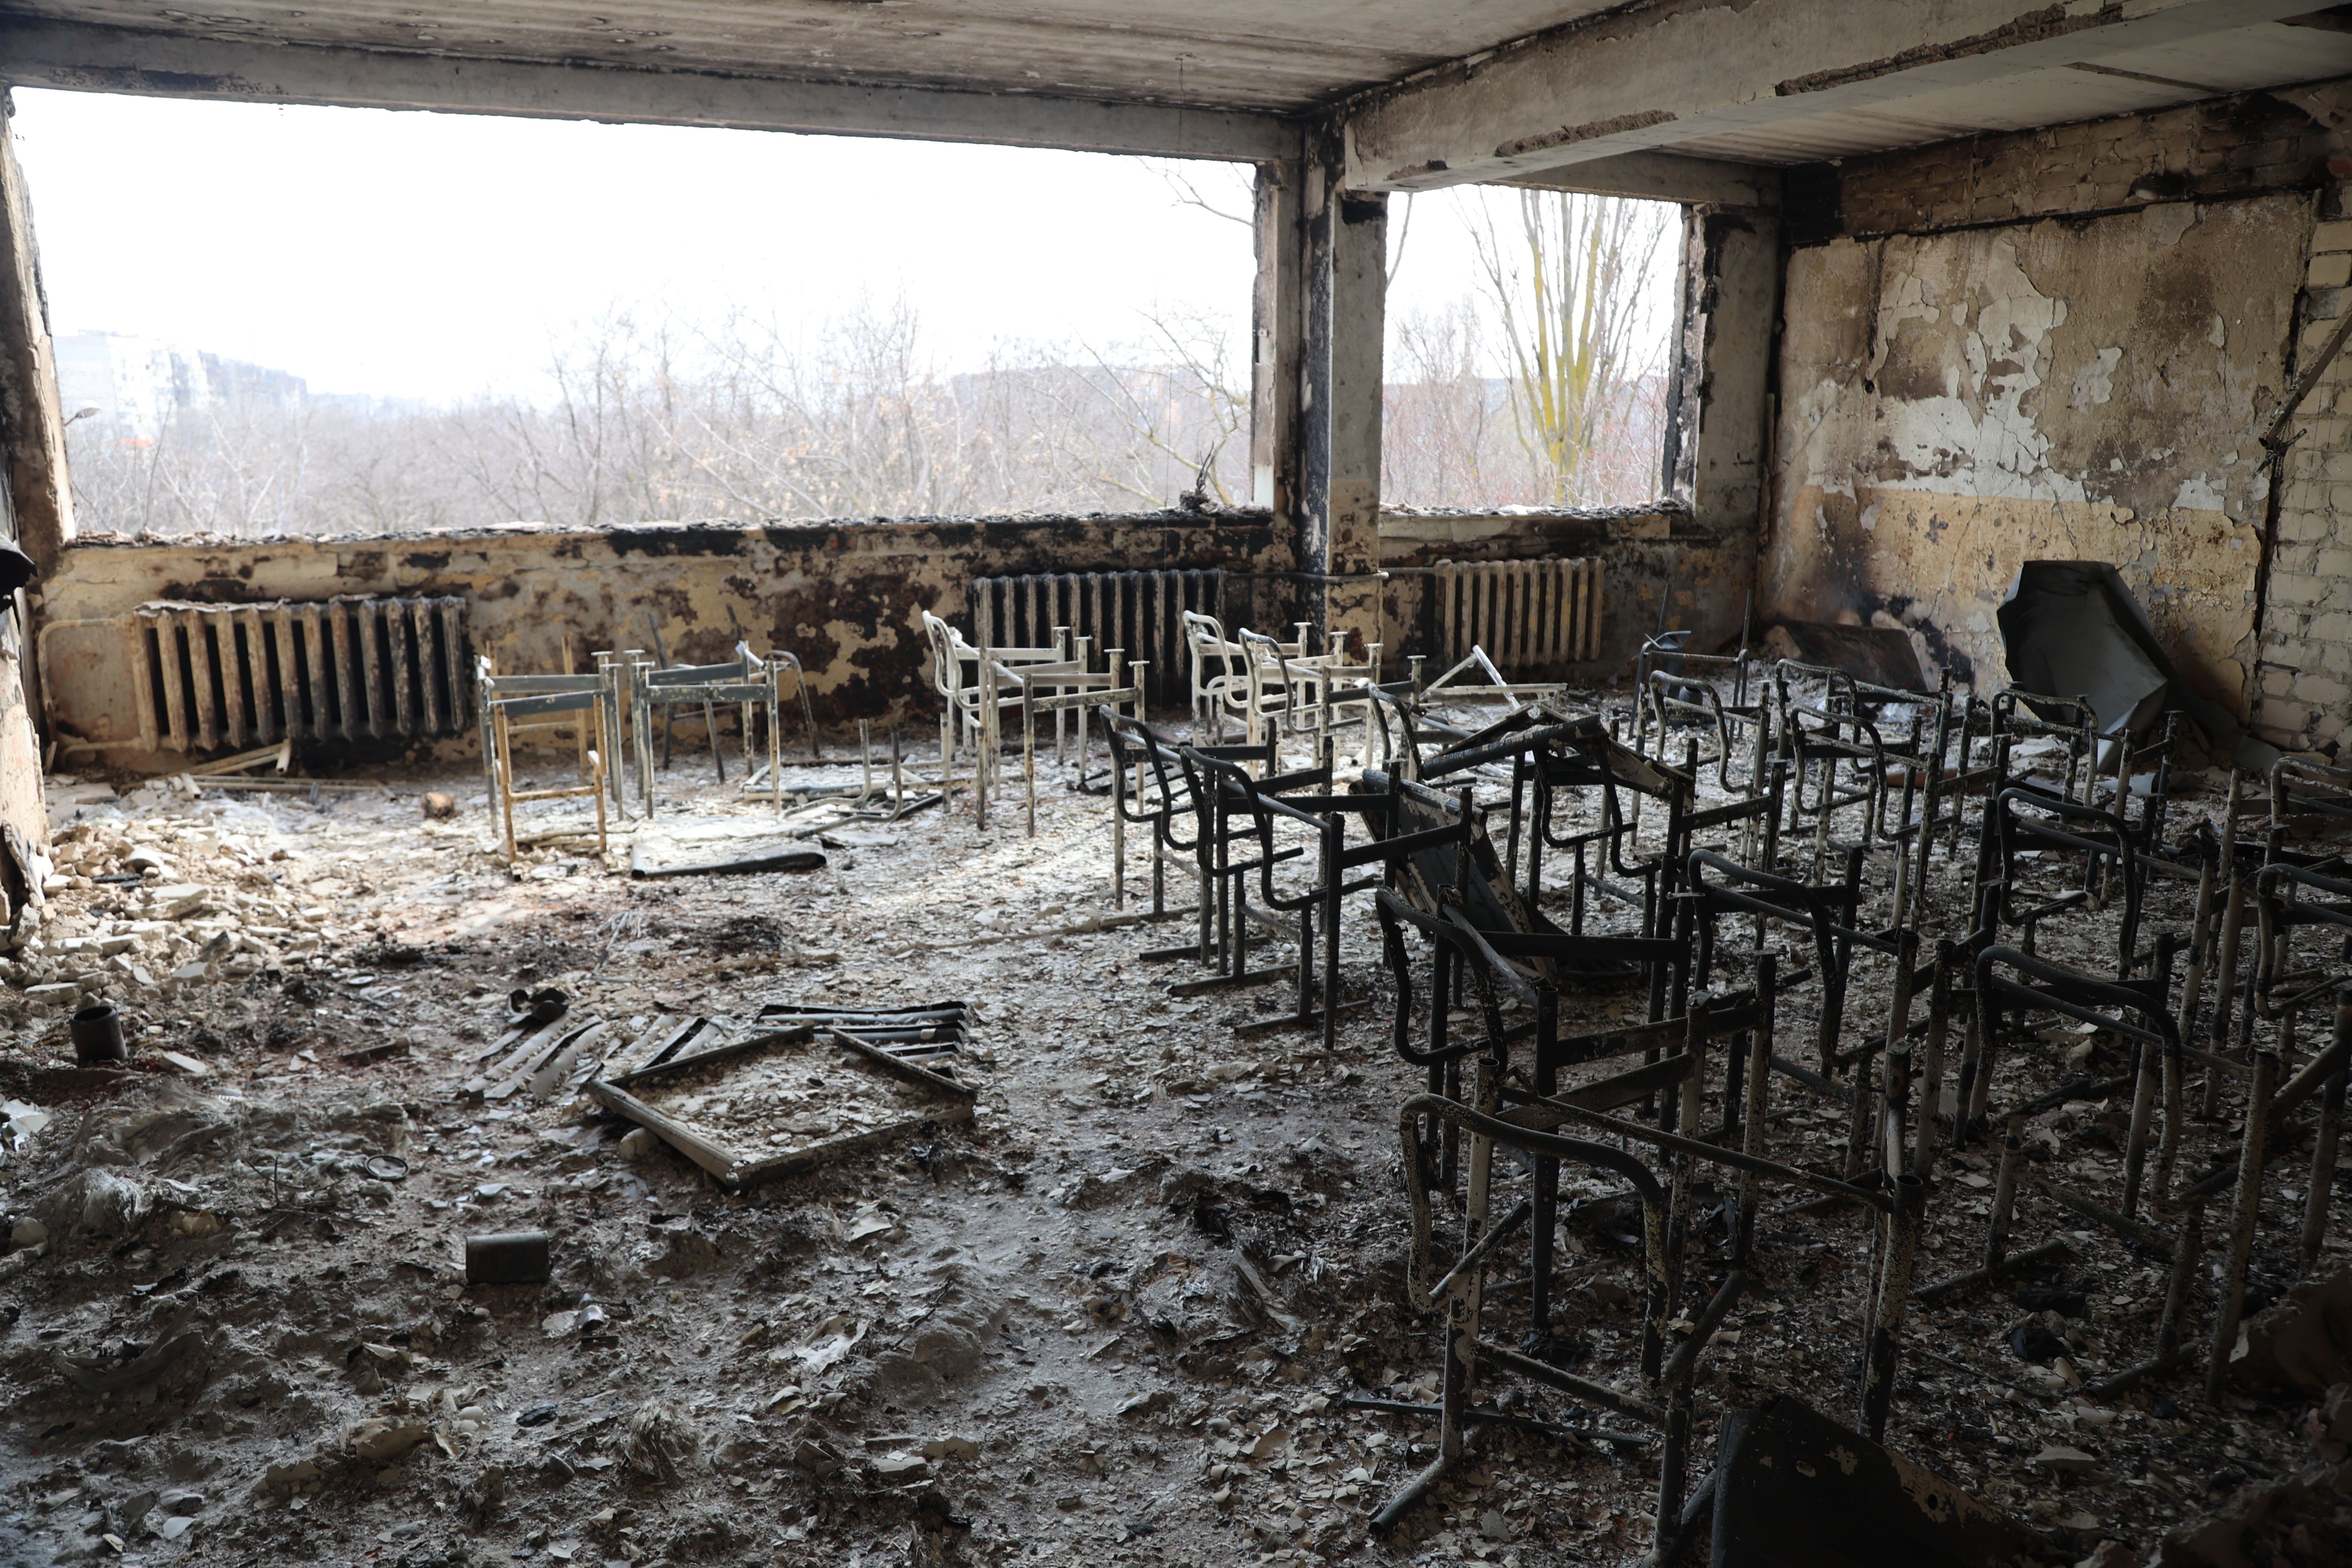     Vista de uma escola danificada após um bombardeio em 29 de março na cidade ucraniana de Mariupol, controlada por militares russos e separatistas pró-Rússia.